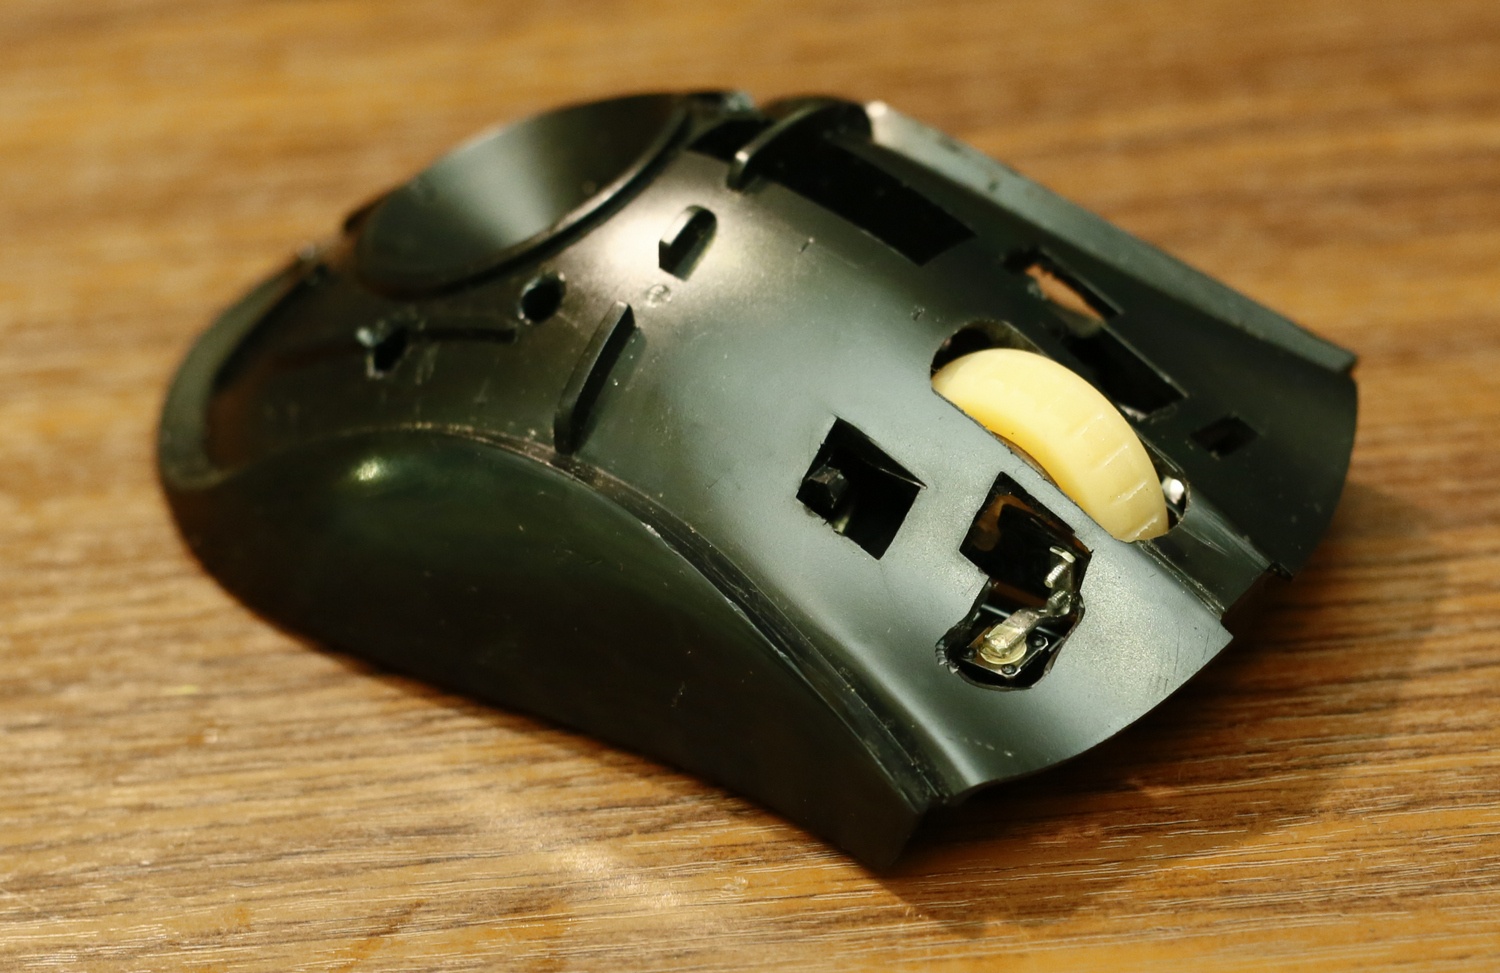 Модернизация мыши — добавление наклонов колеса, замена электроники - 17